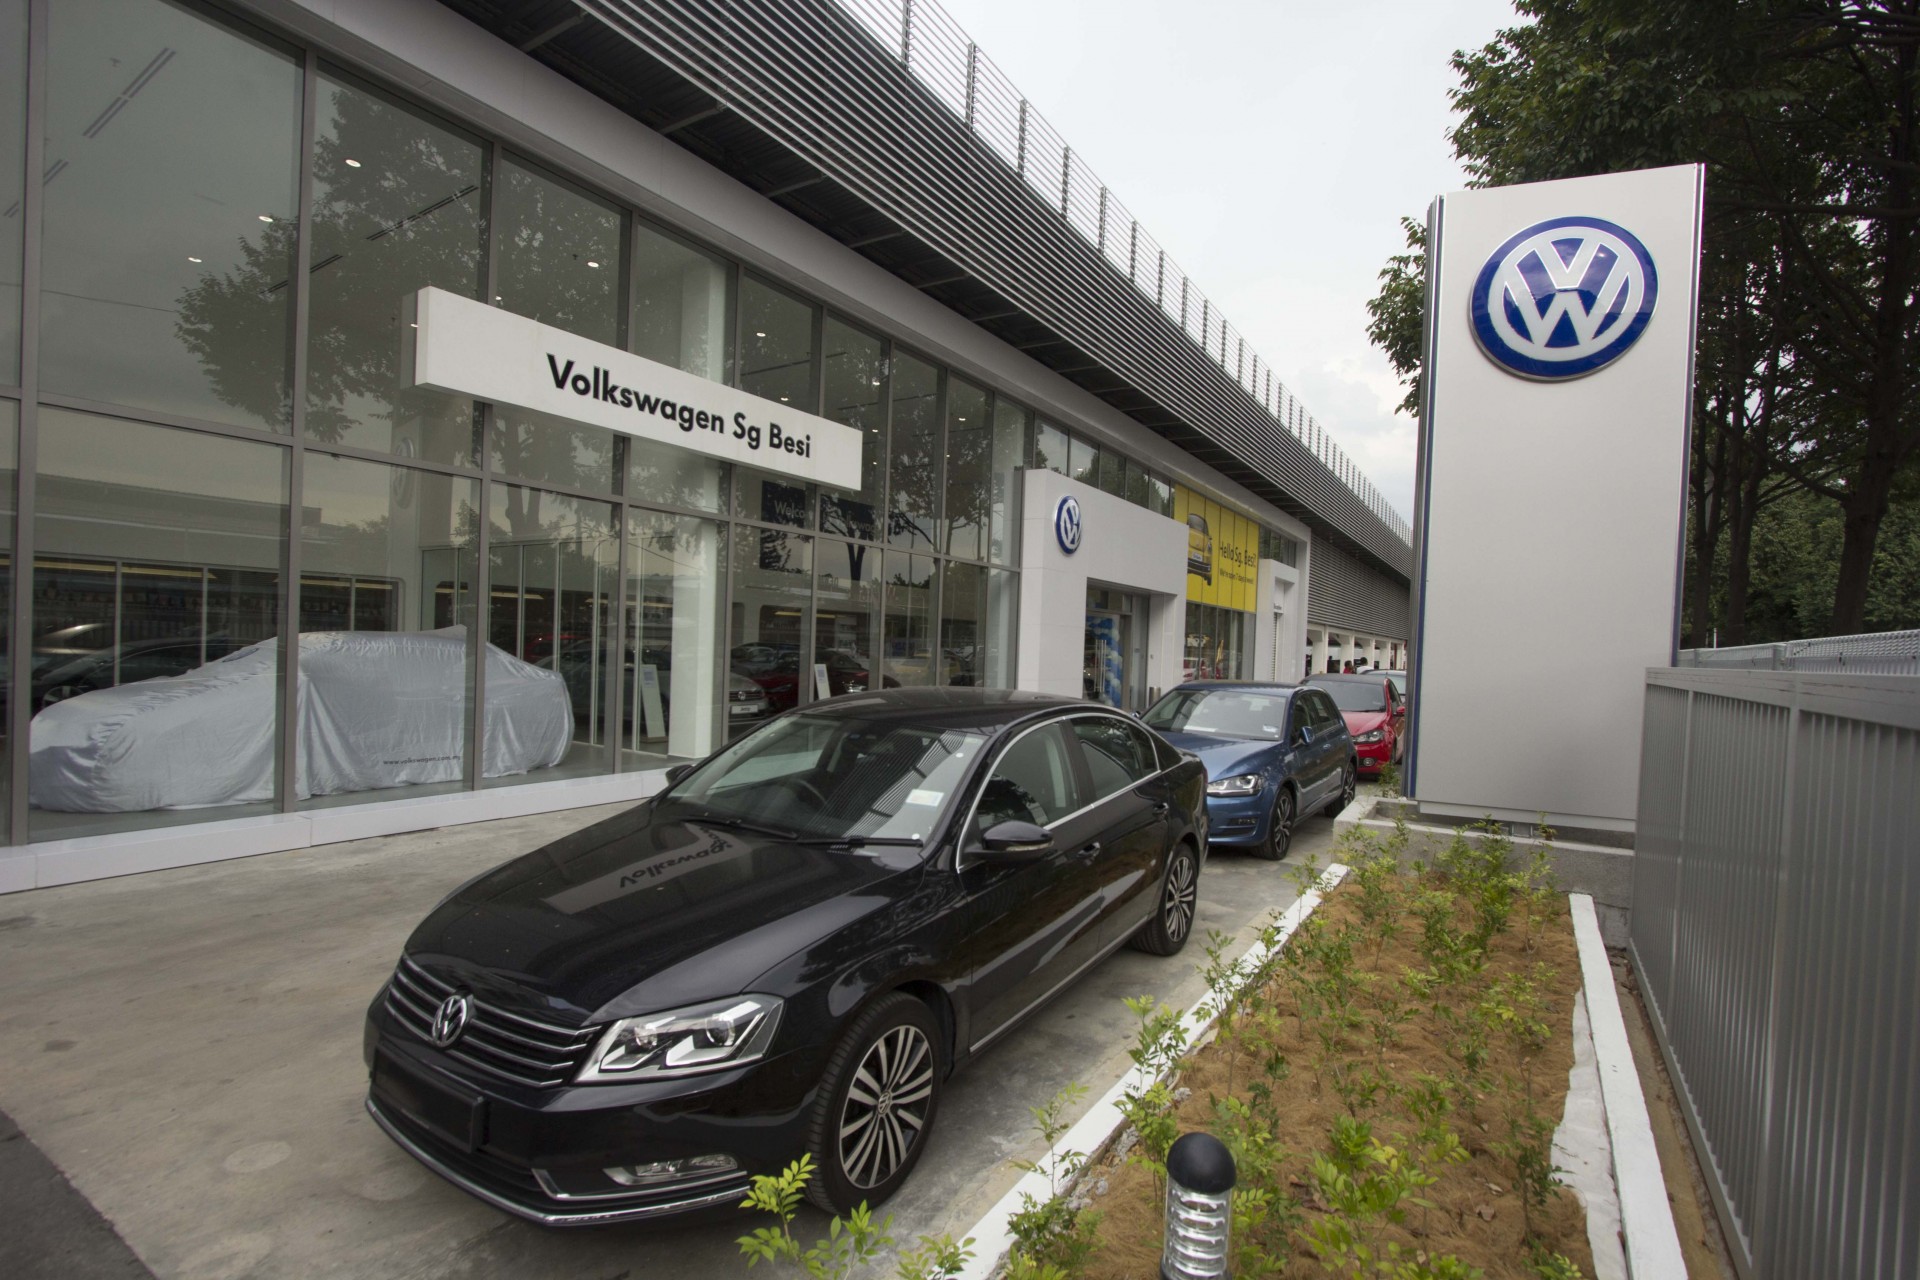 Volkswagen Wearnes Sg Besi new facility